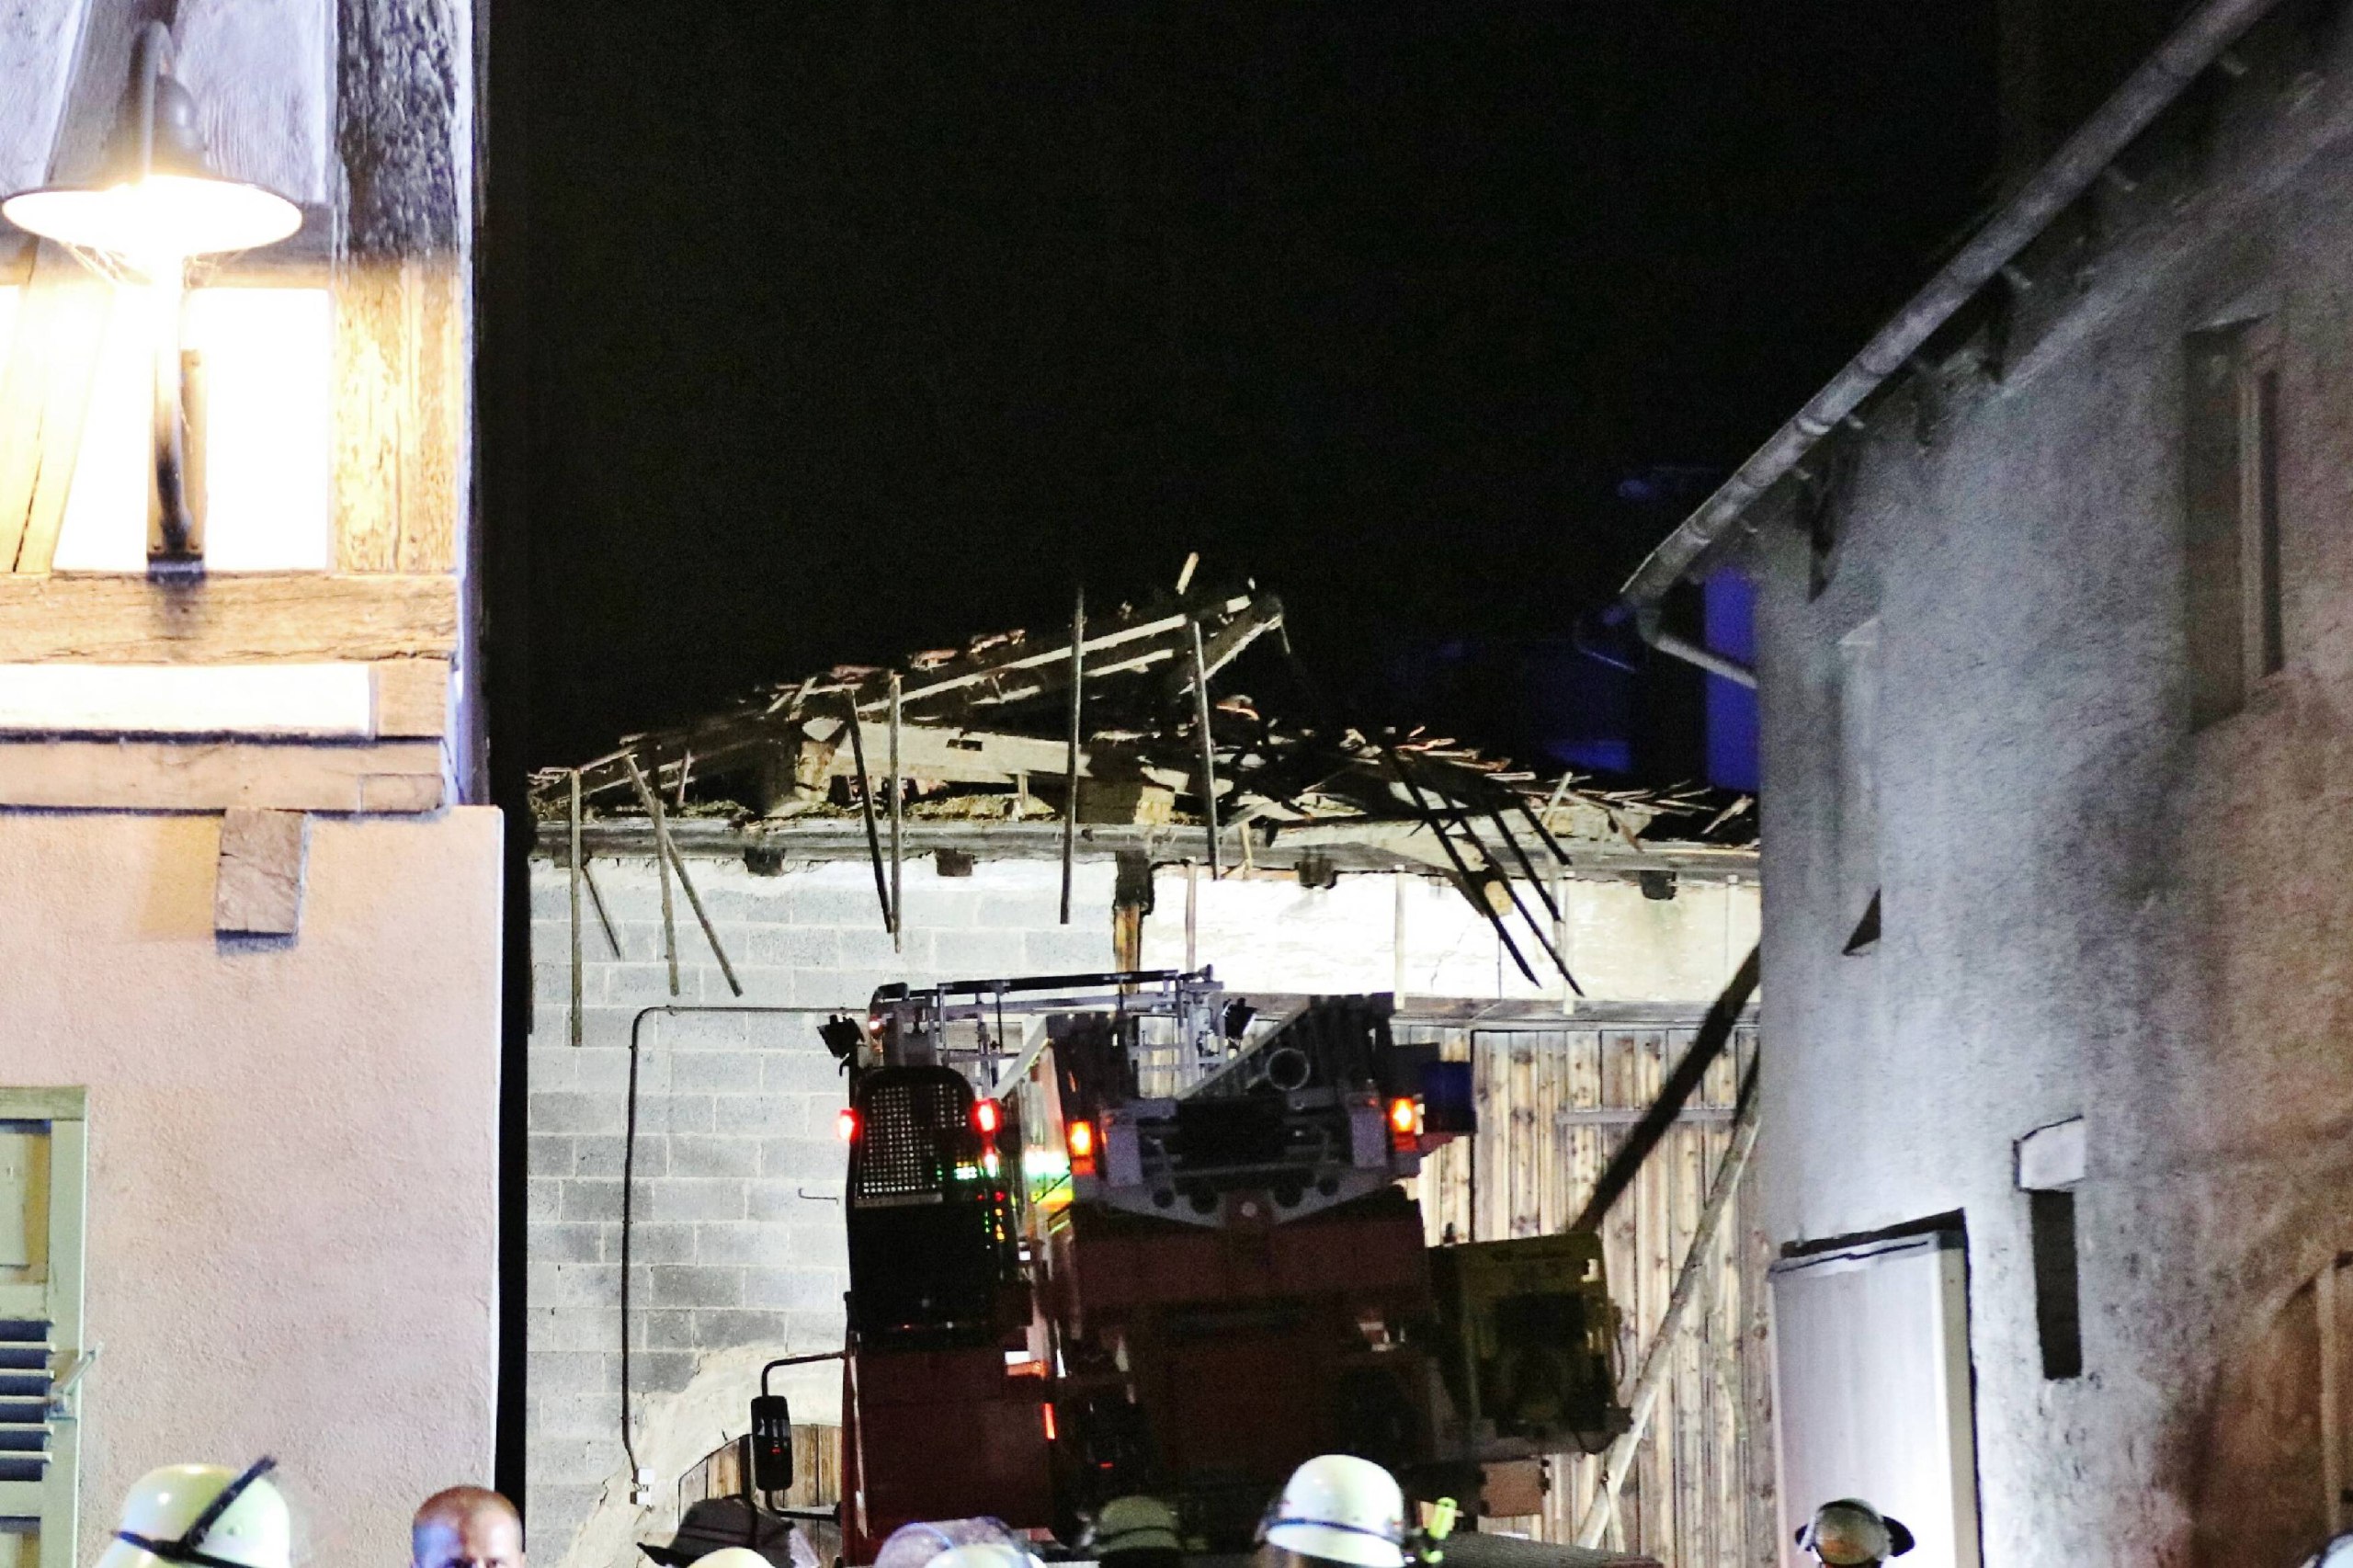 Scheunendach stürzt bei Sturmböe vollständig ein – Feuerwehr in Steinheim an der Murr im Großeinsatz – 60.000 Euro Schaden